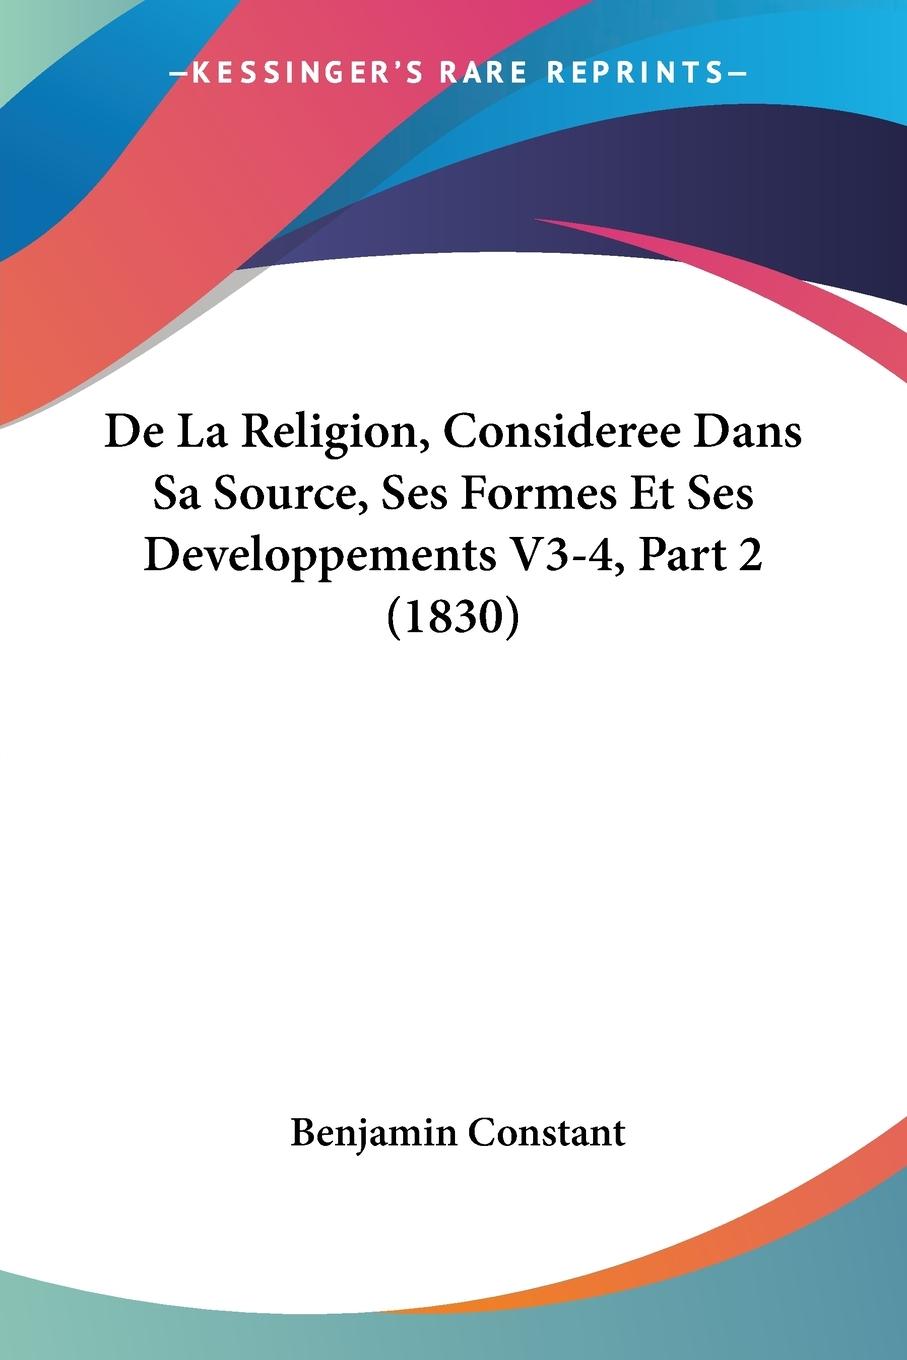 De La Religion, Consideree Dans Sa Source, Ses Formes Et Ses Developpements V3-4, Part 2 (1830) - Constant, Benjamin